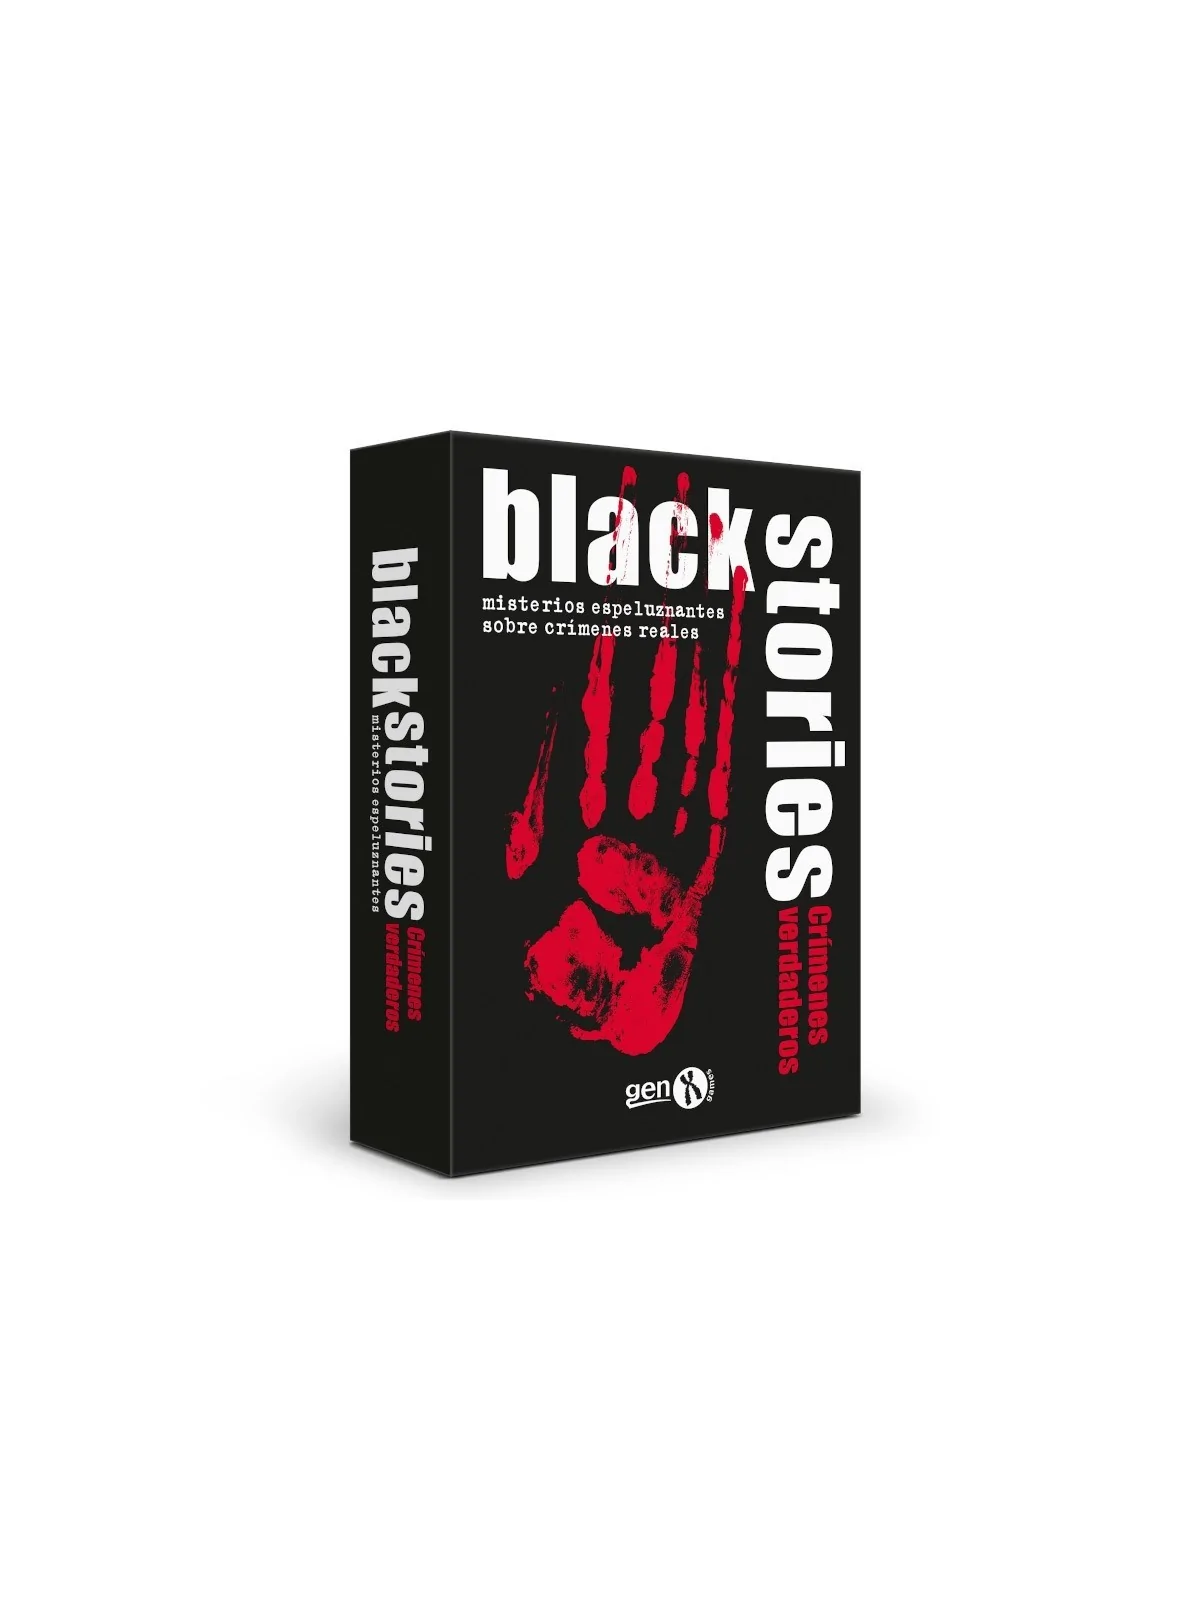 Comprar Black Stories: Crímenes Verdaderos barato al mejor precio 11,6